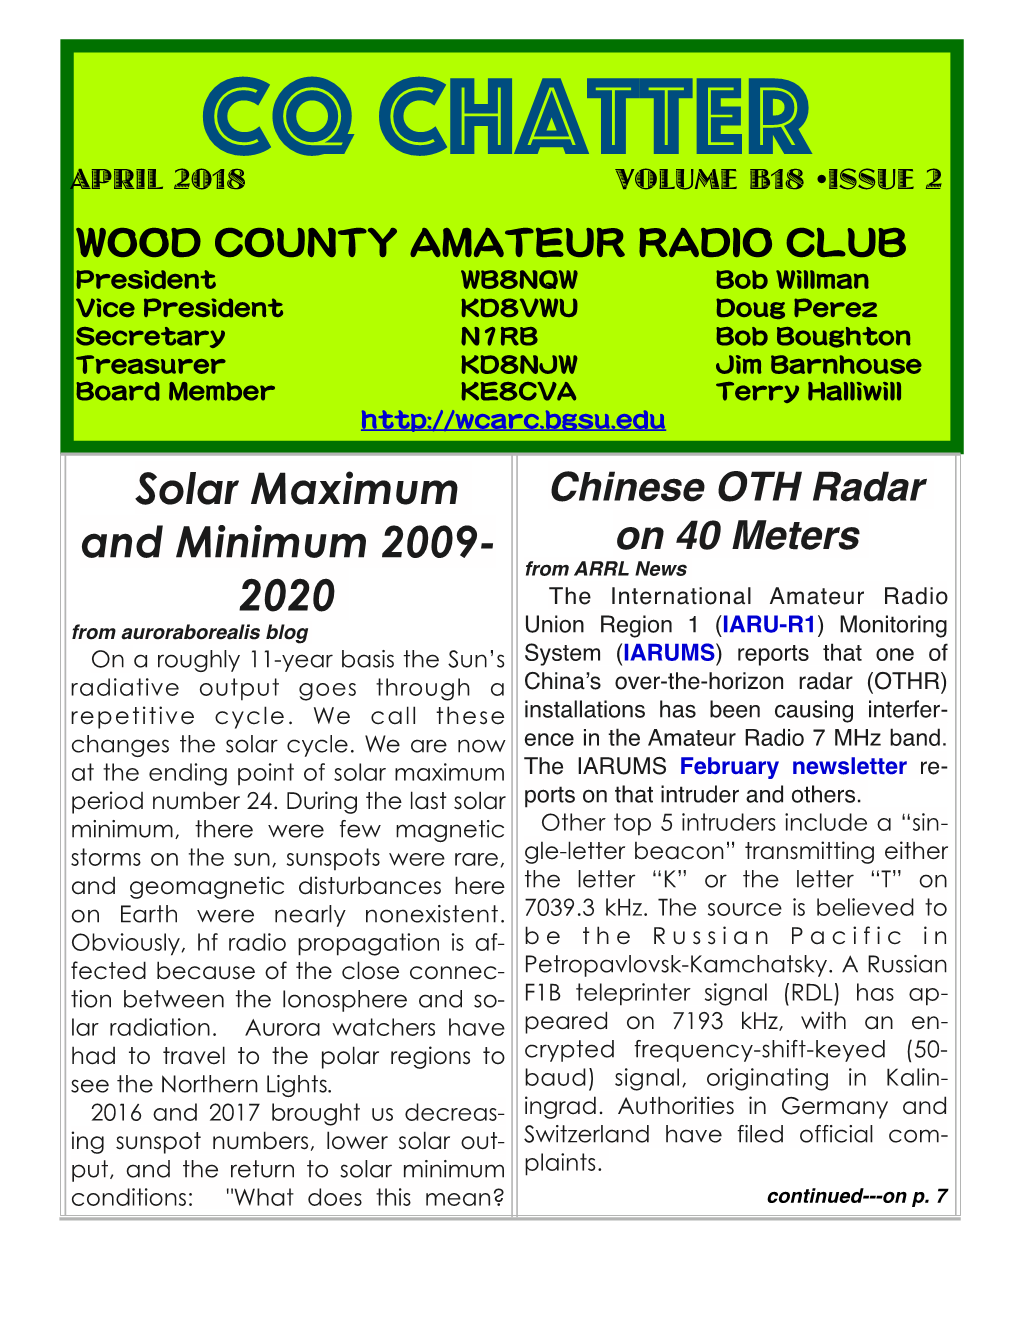 Solar Maximum and Minimum 2009